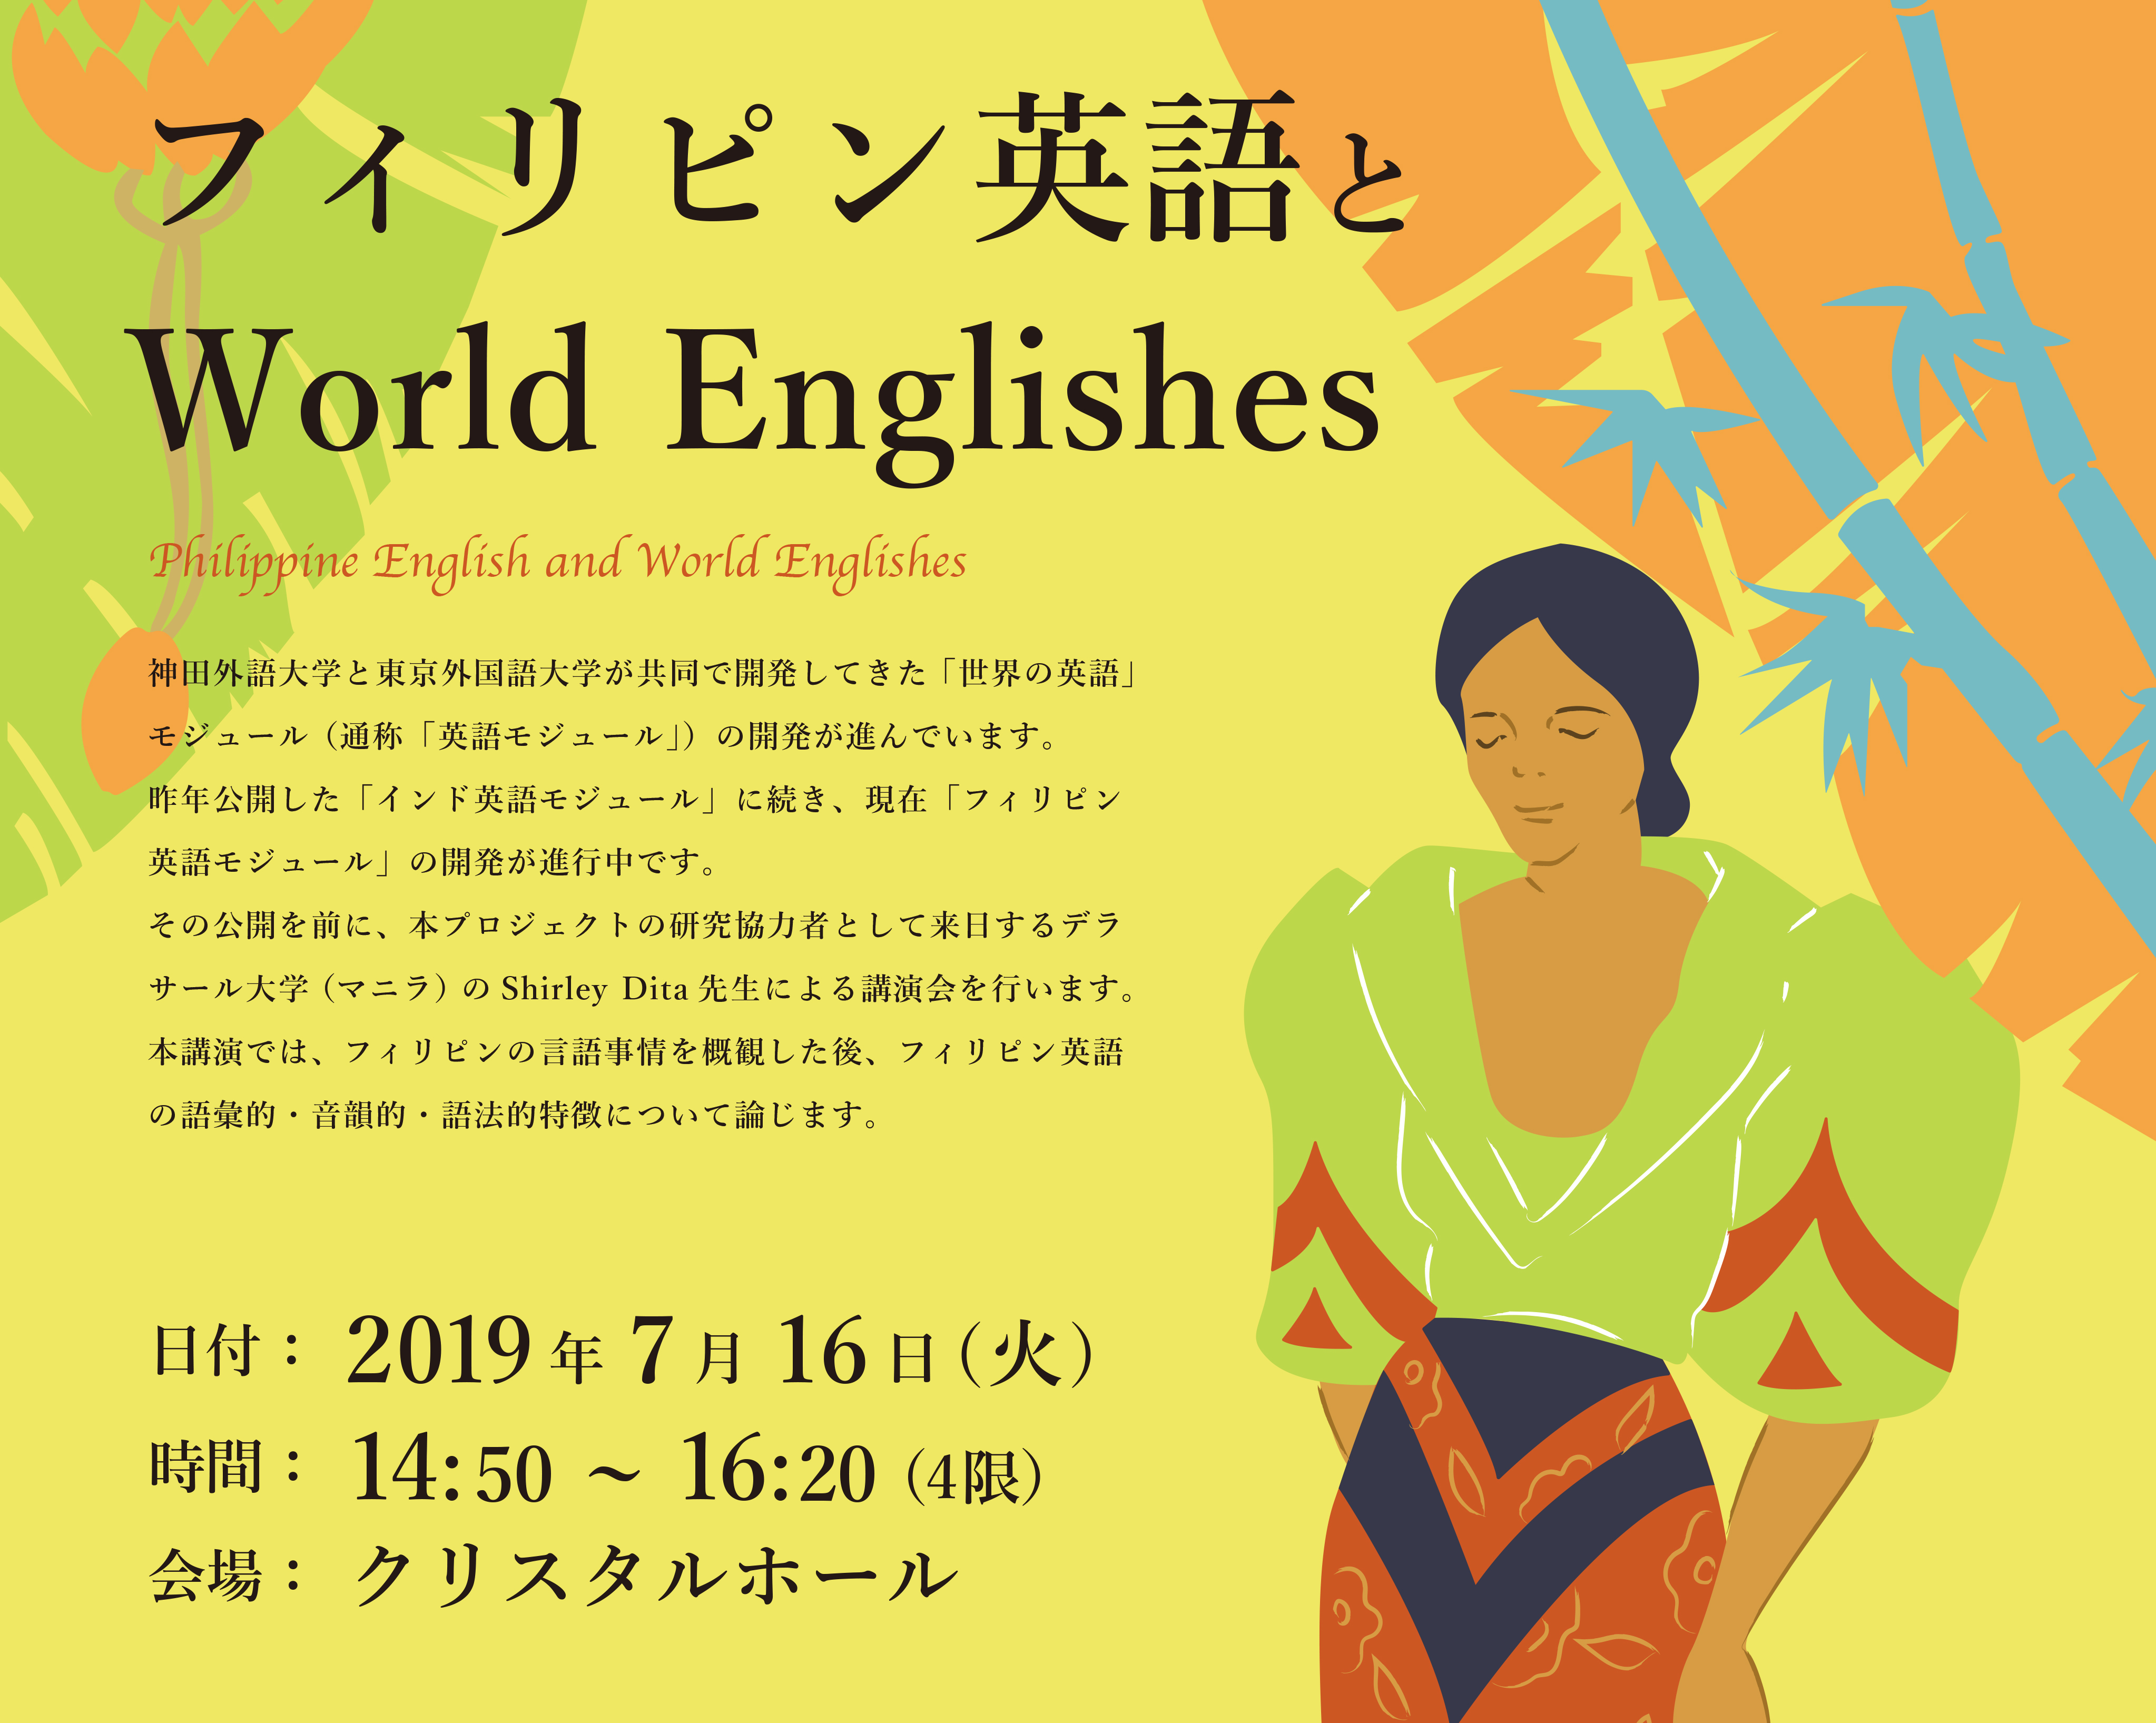 フィリピン英語とWorld Englishes 神田外語大学